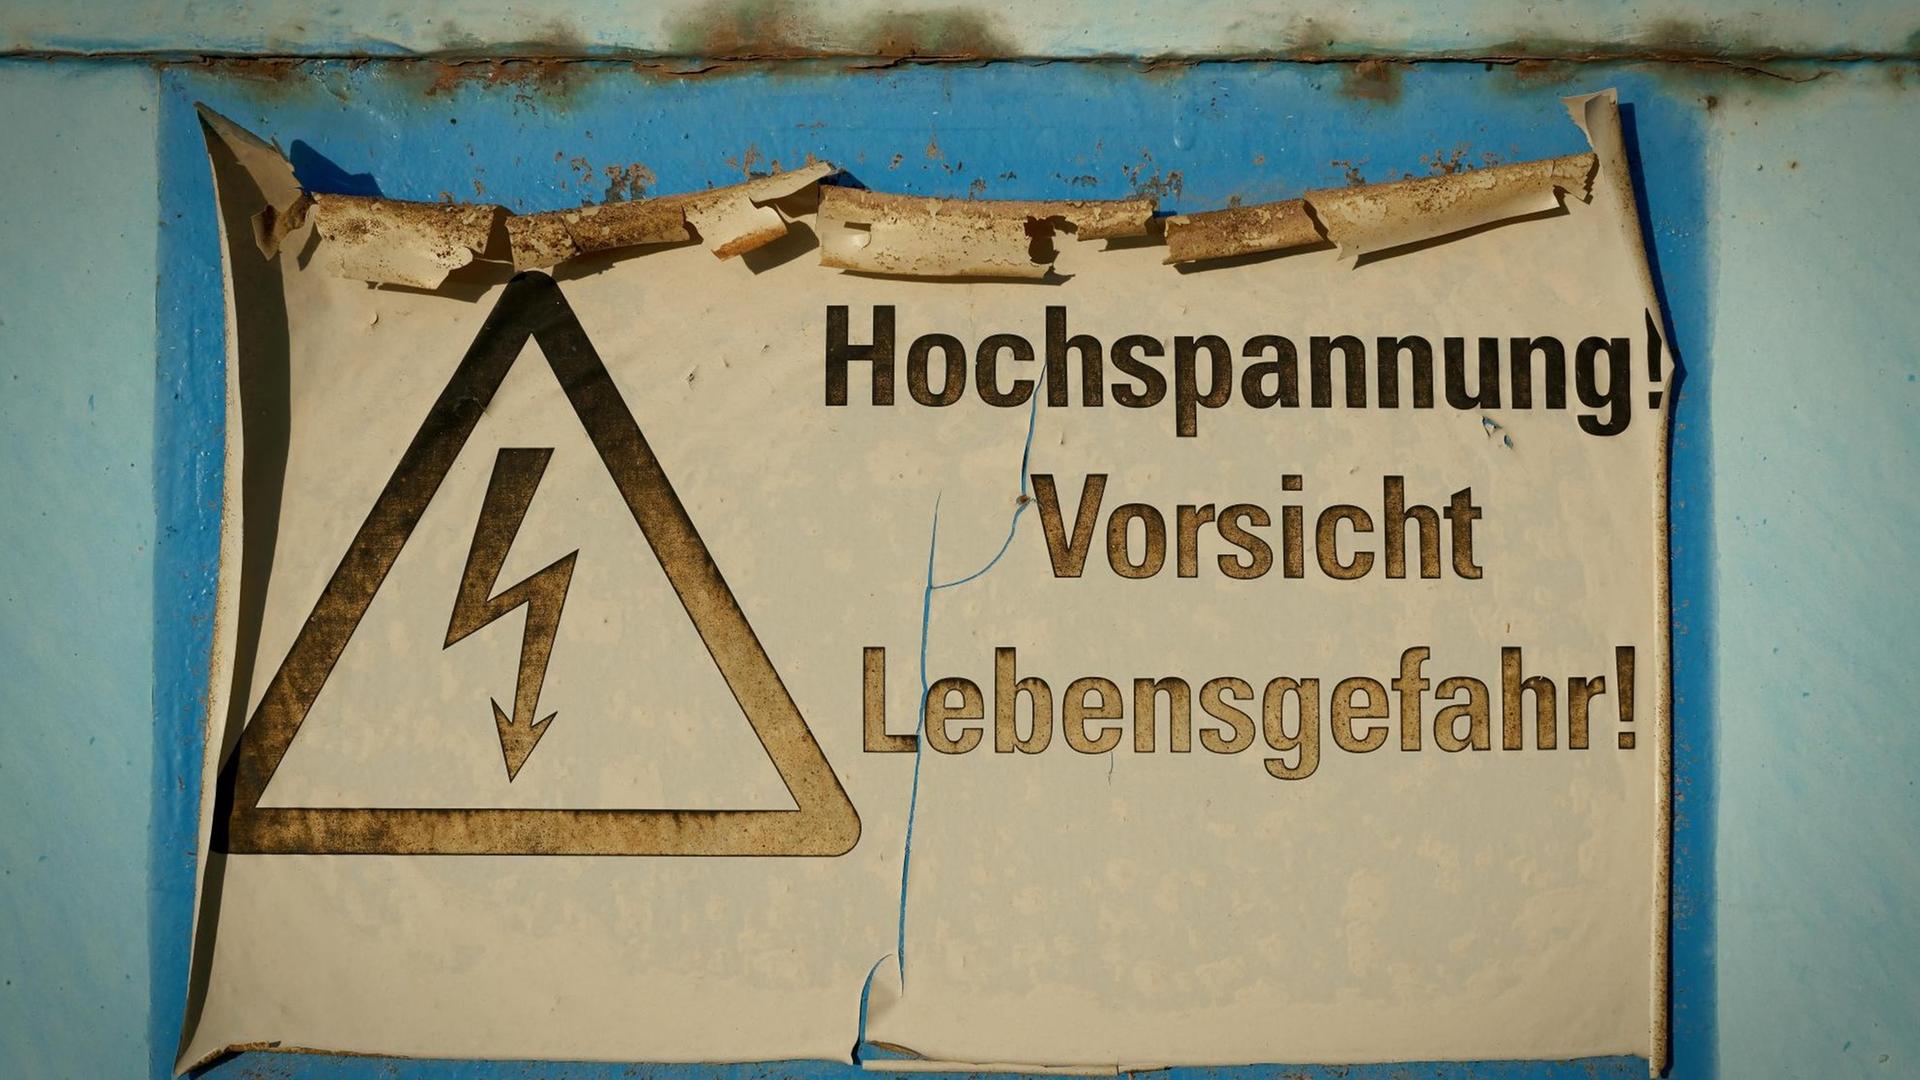 Farbfoto eines verblassten Schildes mit der Aufschrift, "Hochspannung Vorsicht Lebensgefahr"